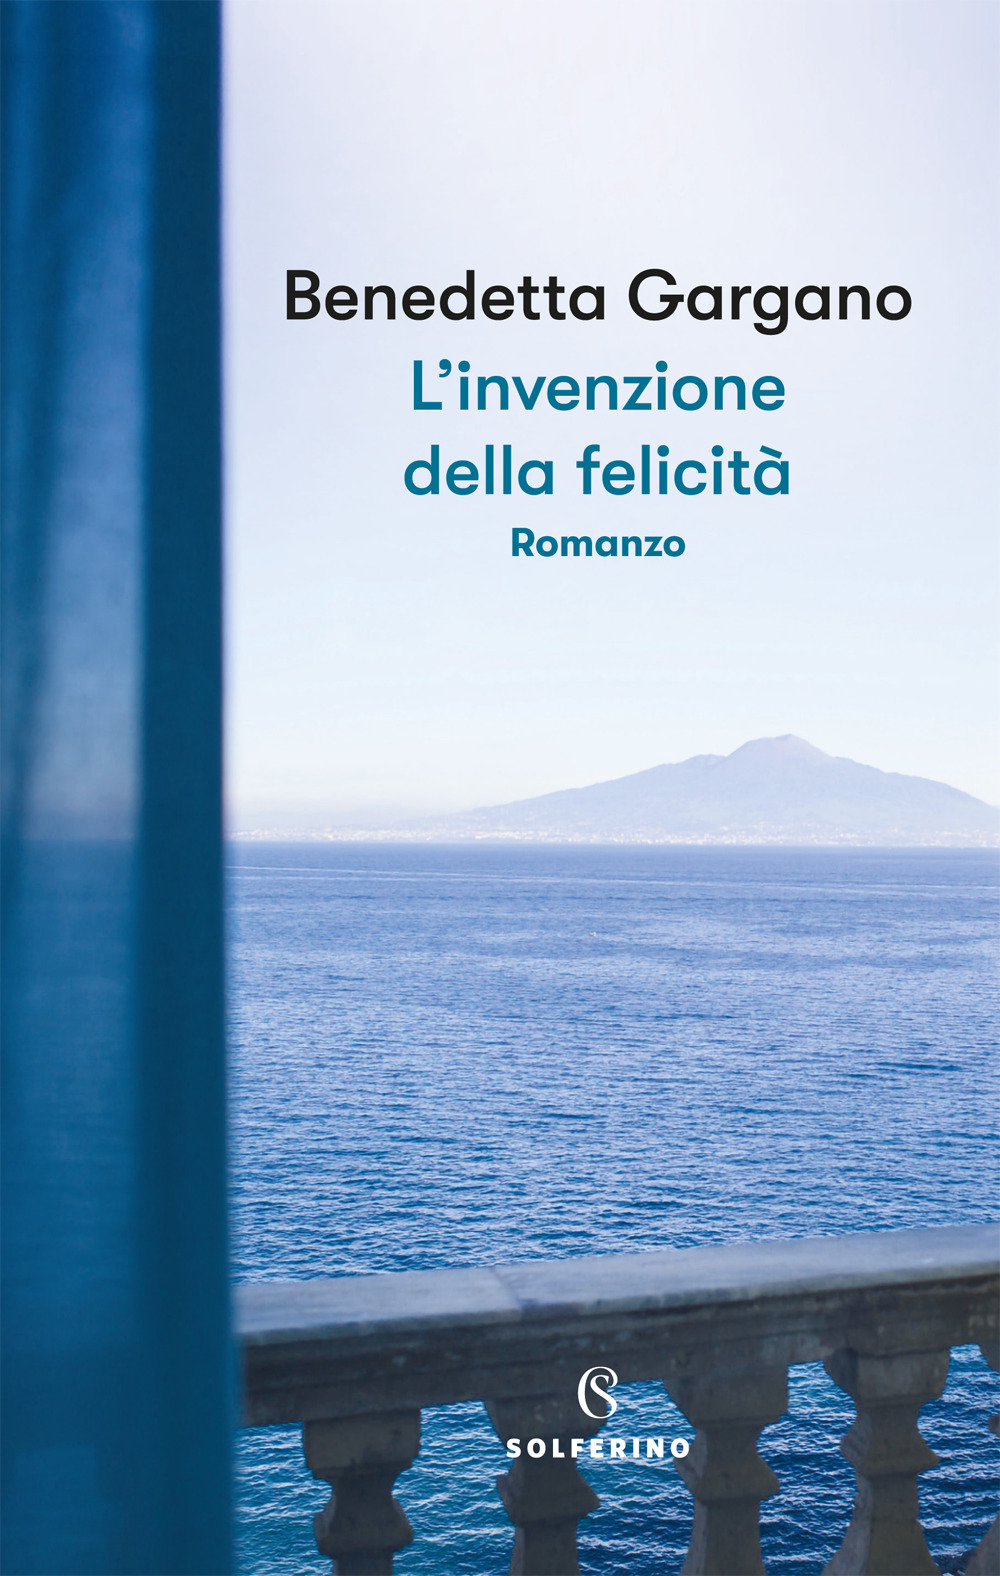 Libri Gargano Benedetta - L' Invenzione Della Felicita NUOVO SIGILLATO, EDIZIONE DEL 13/05/2021 SUBITO DISPONIBILE